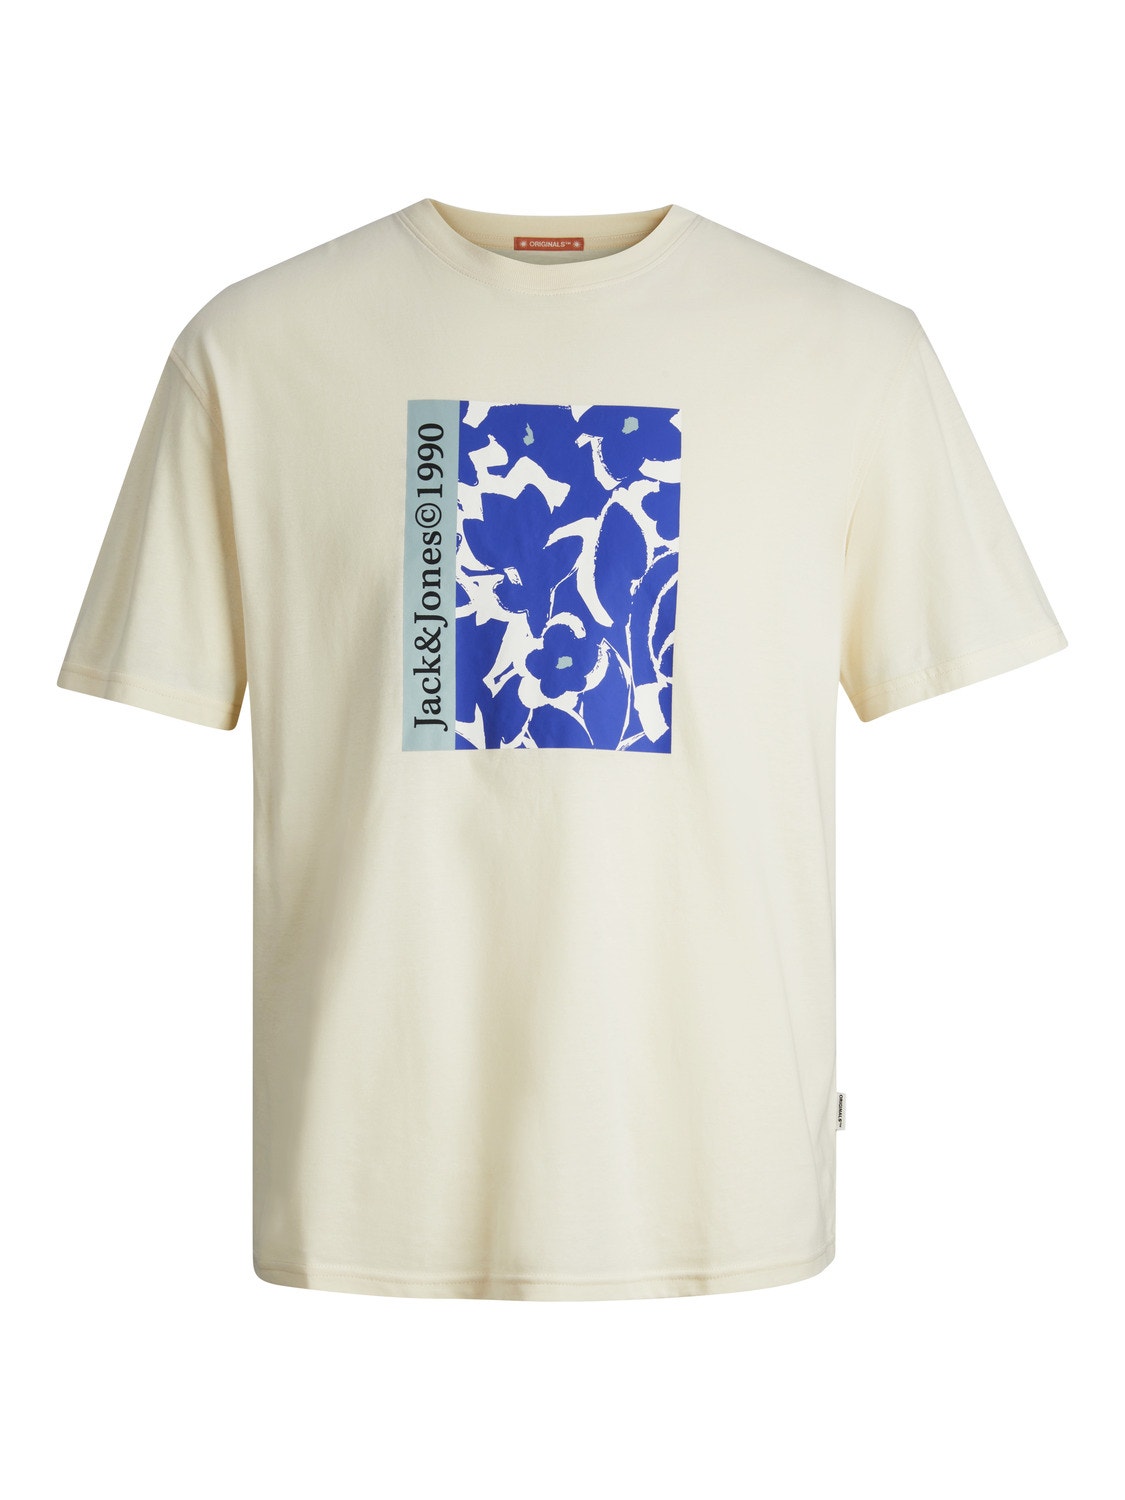 Jack & Jones Printed T-shirt For boys -Buttercream - 12257641